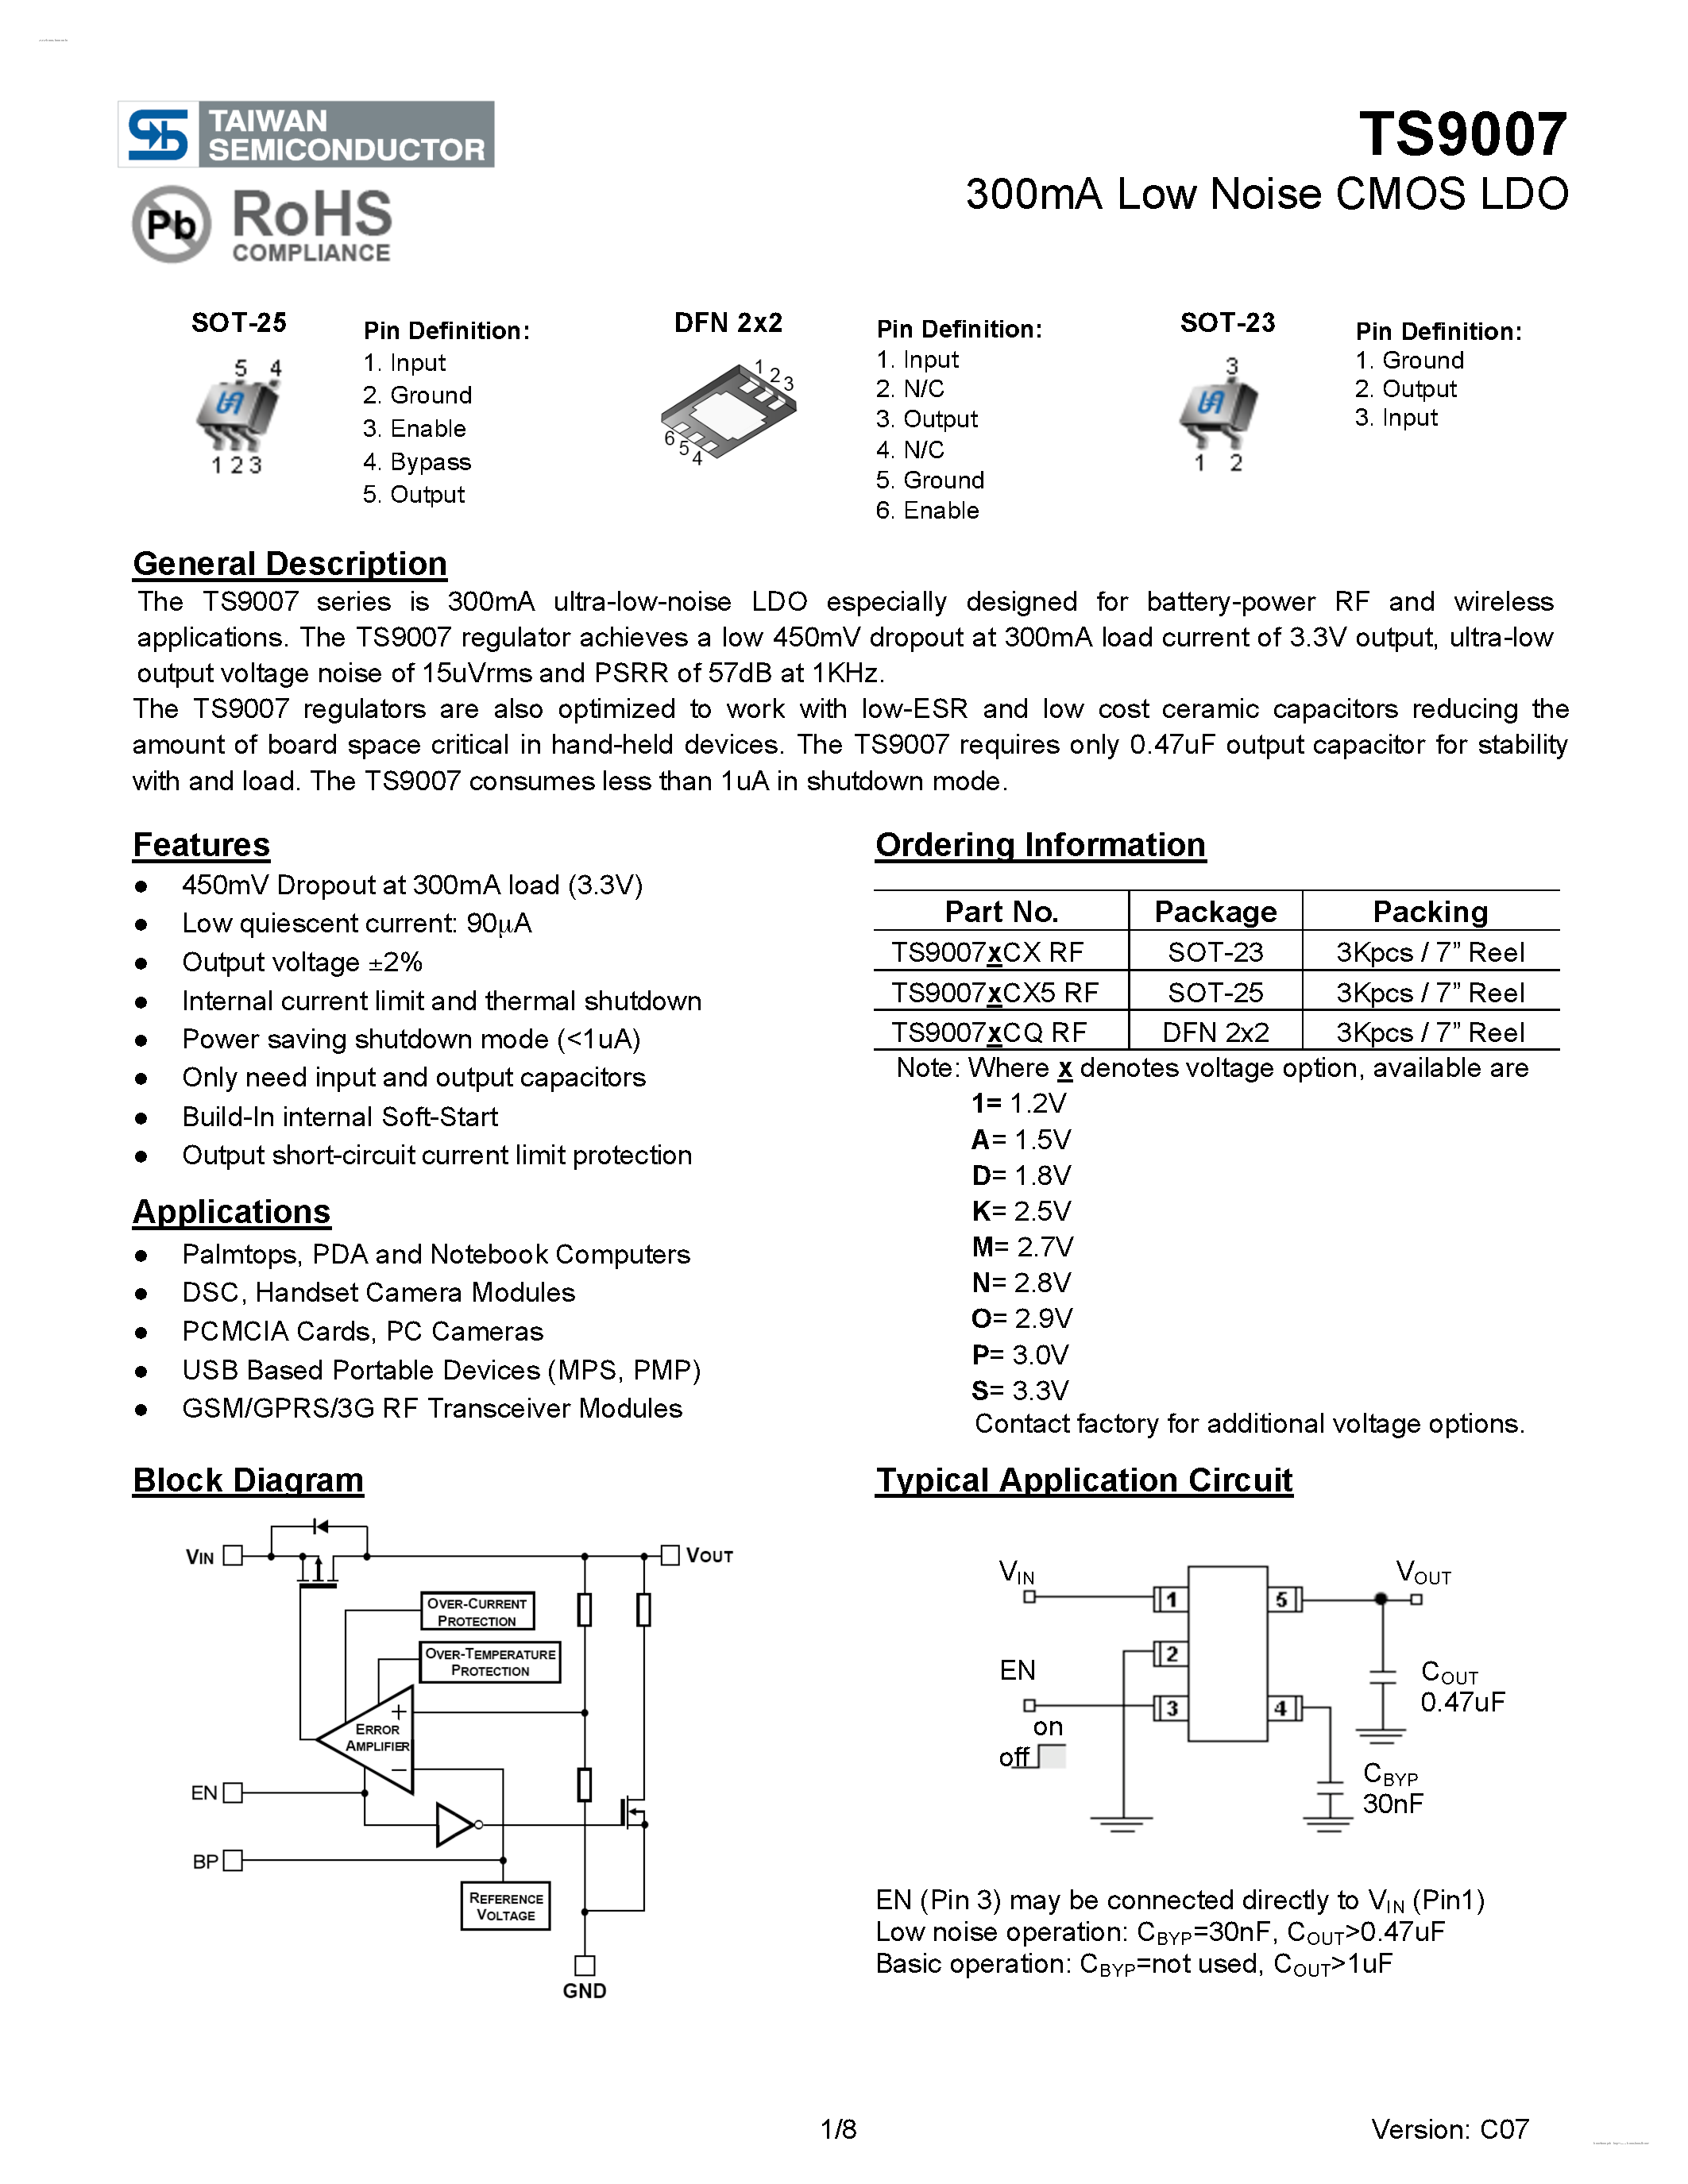 Даташит TS9007 - 300mA Low Noise CMOS LDO страница 1